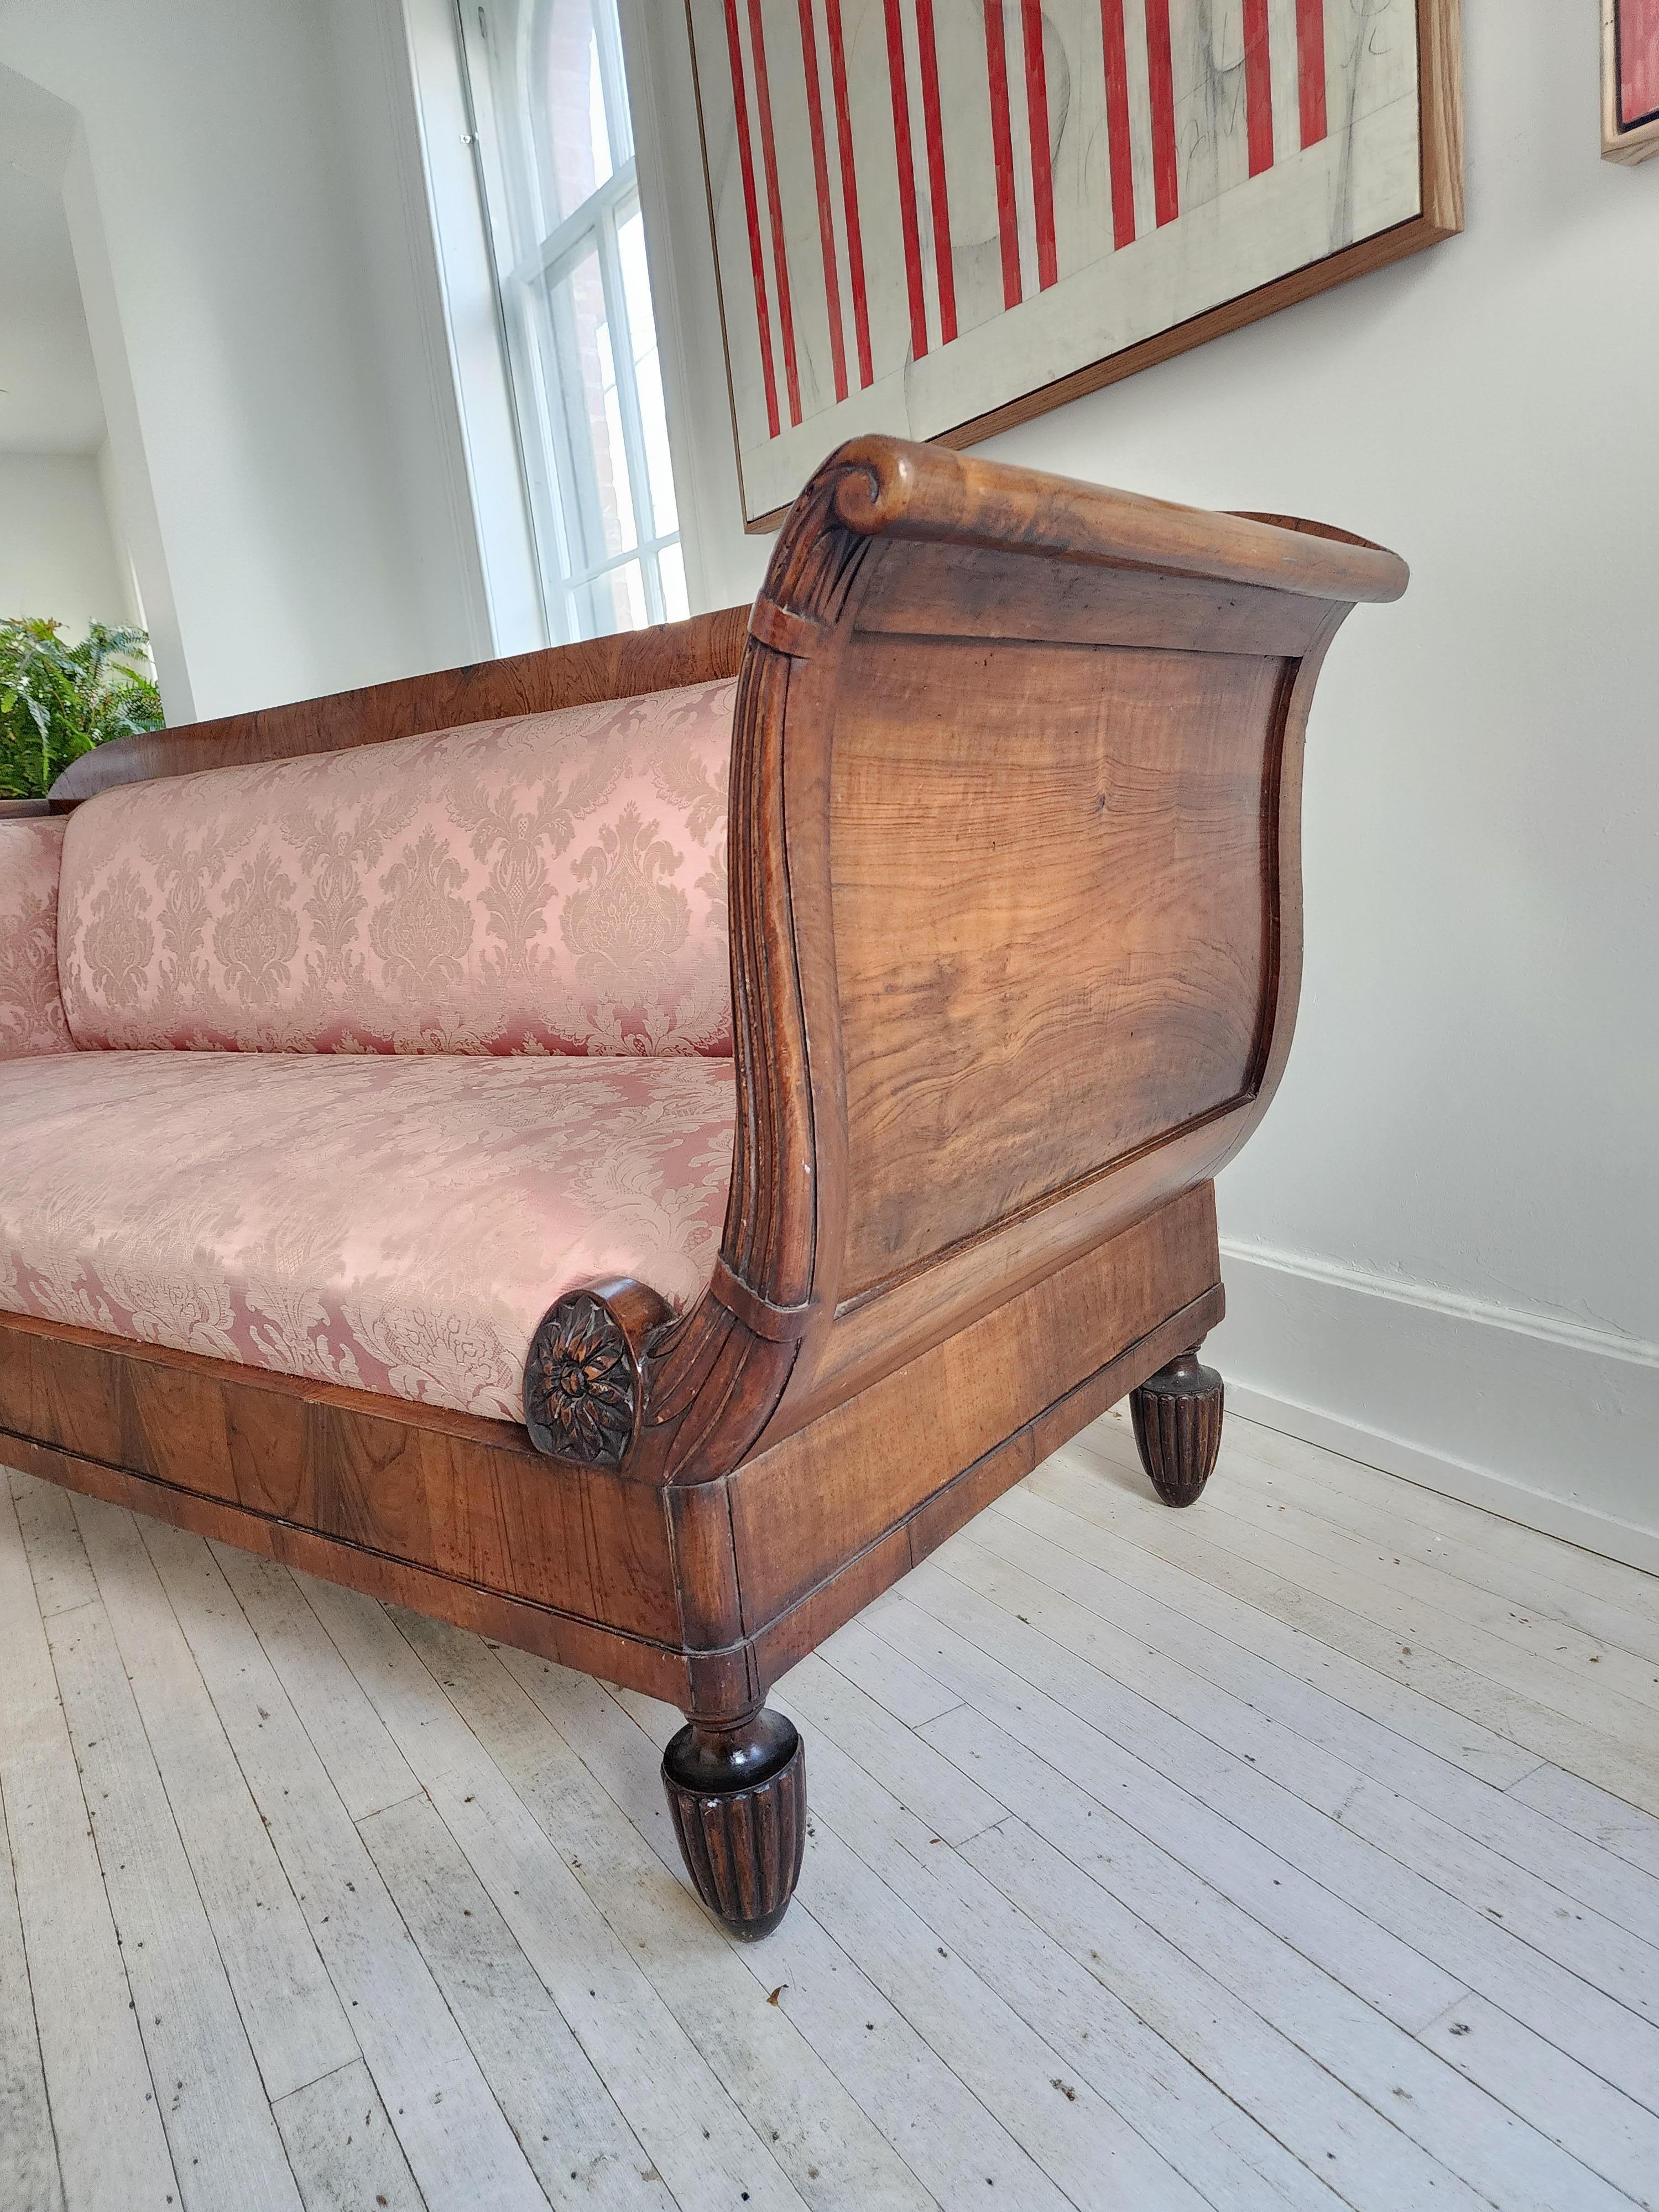 Großartiges Design, voller Anmut und Präsenz. Dieses große Sofa, hergestellt in Italien in der 1. Hälfte des 19. Jahrhunderts, ist eine echte Rarität. 
Die schönen Schnitzereien an den Vorderseiten der Armlehnen und wie sie sich langsam und anmutig